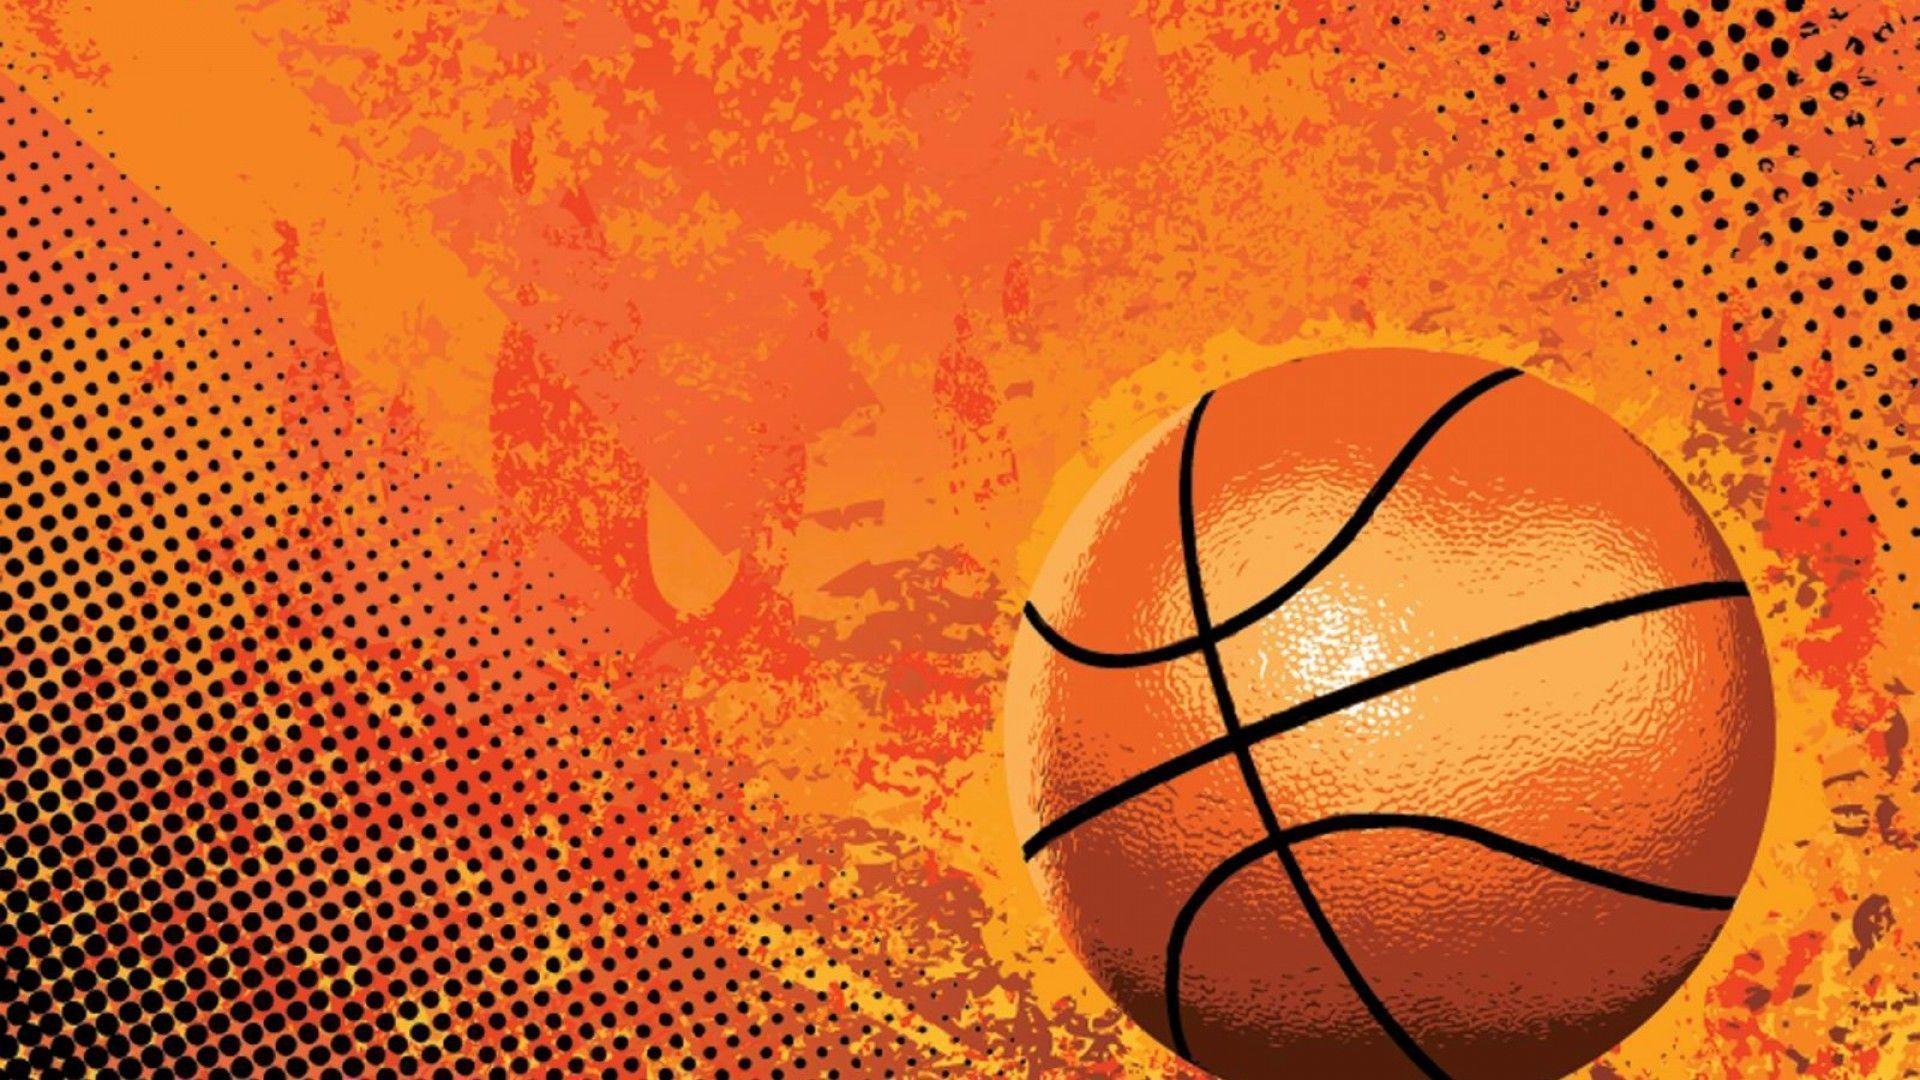 Best Basketball Wallpaper Background › Findorget.com